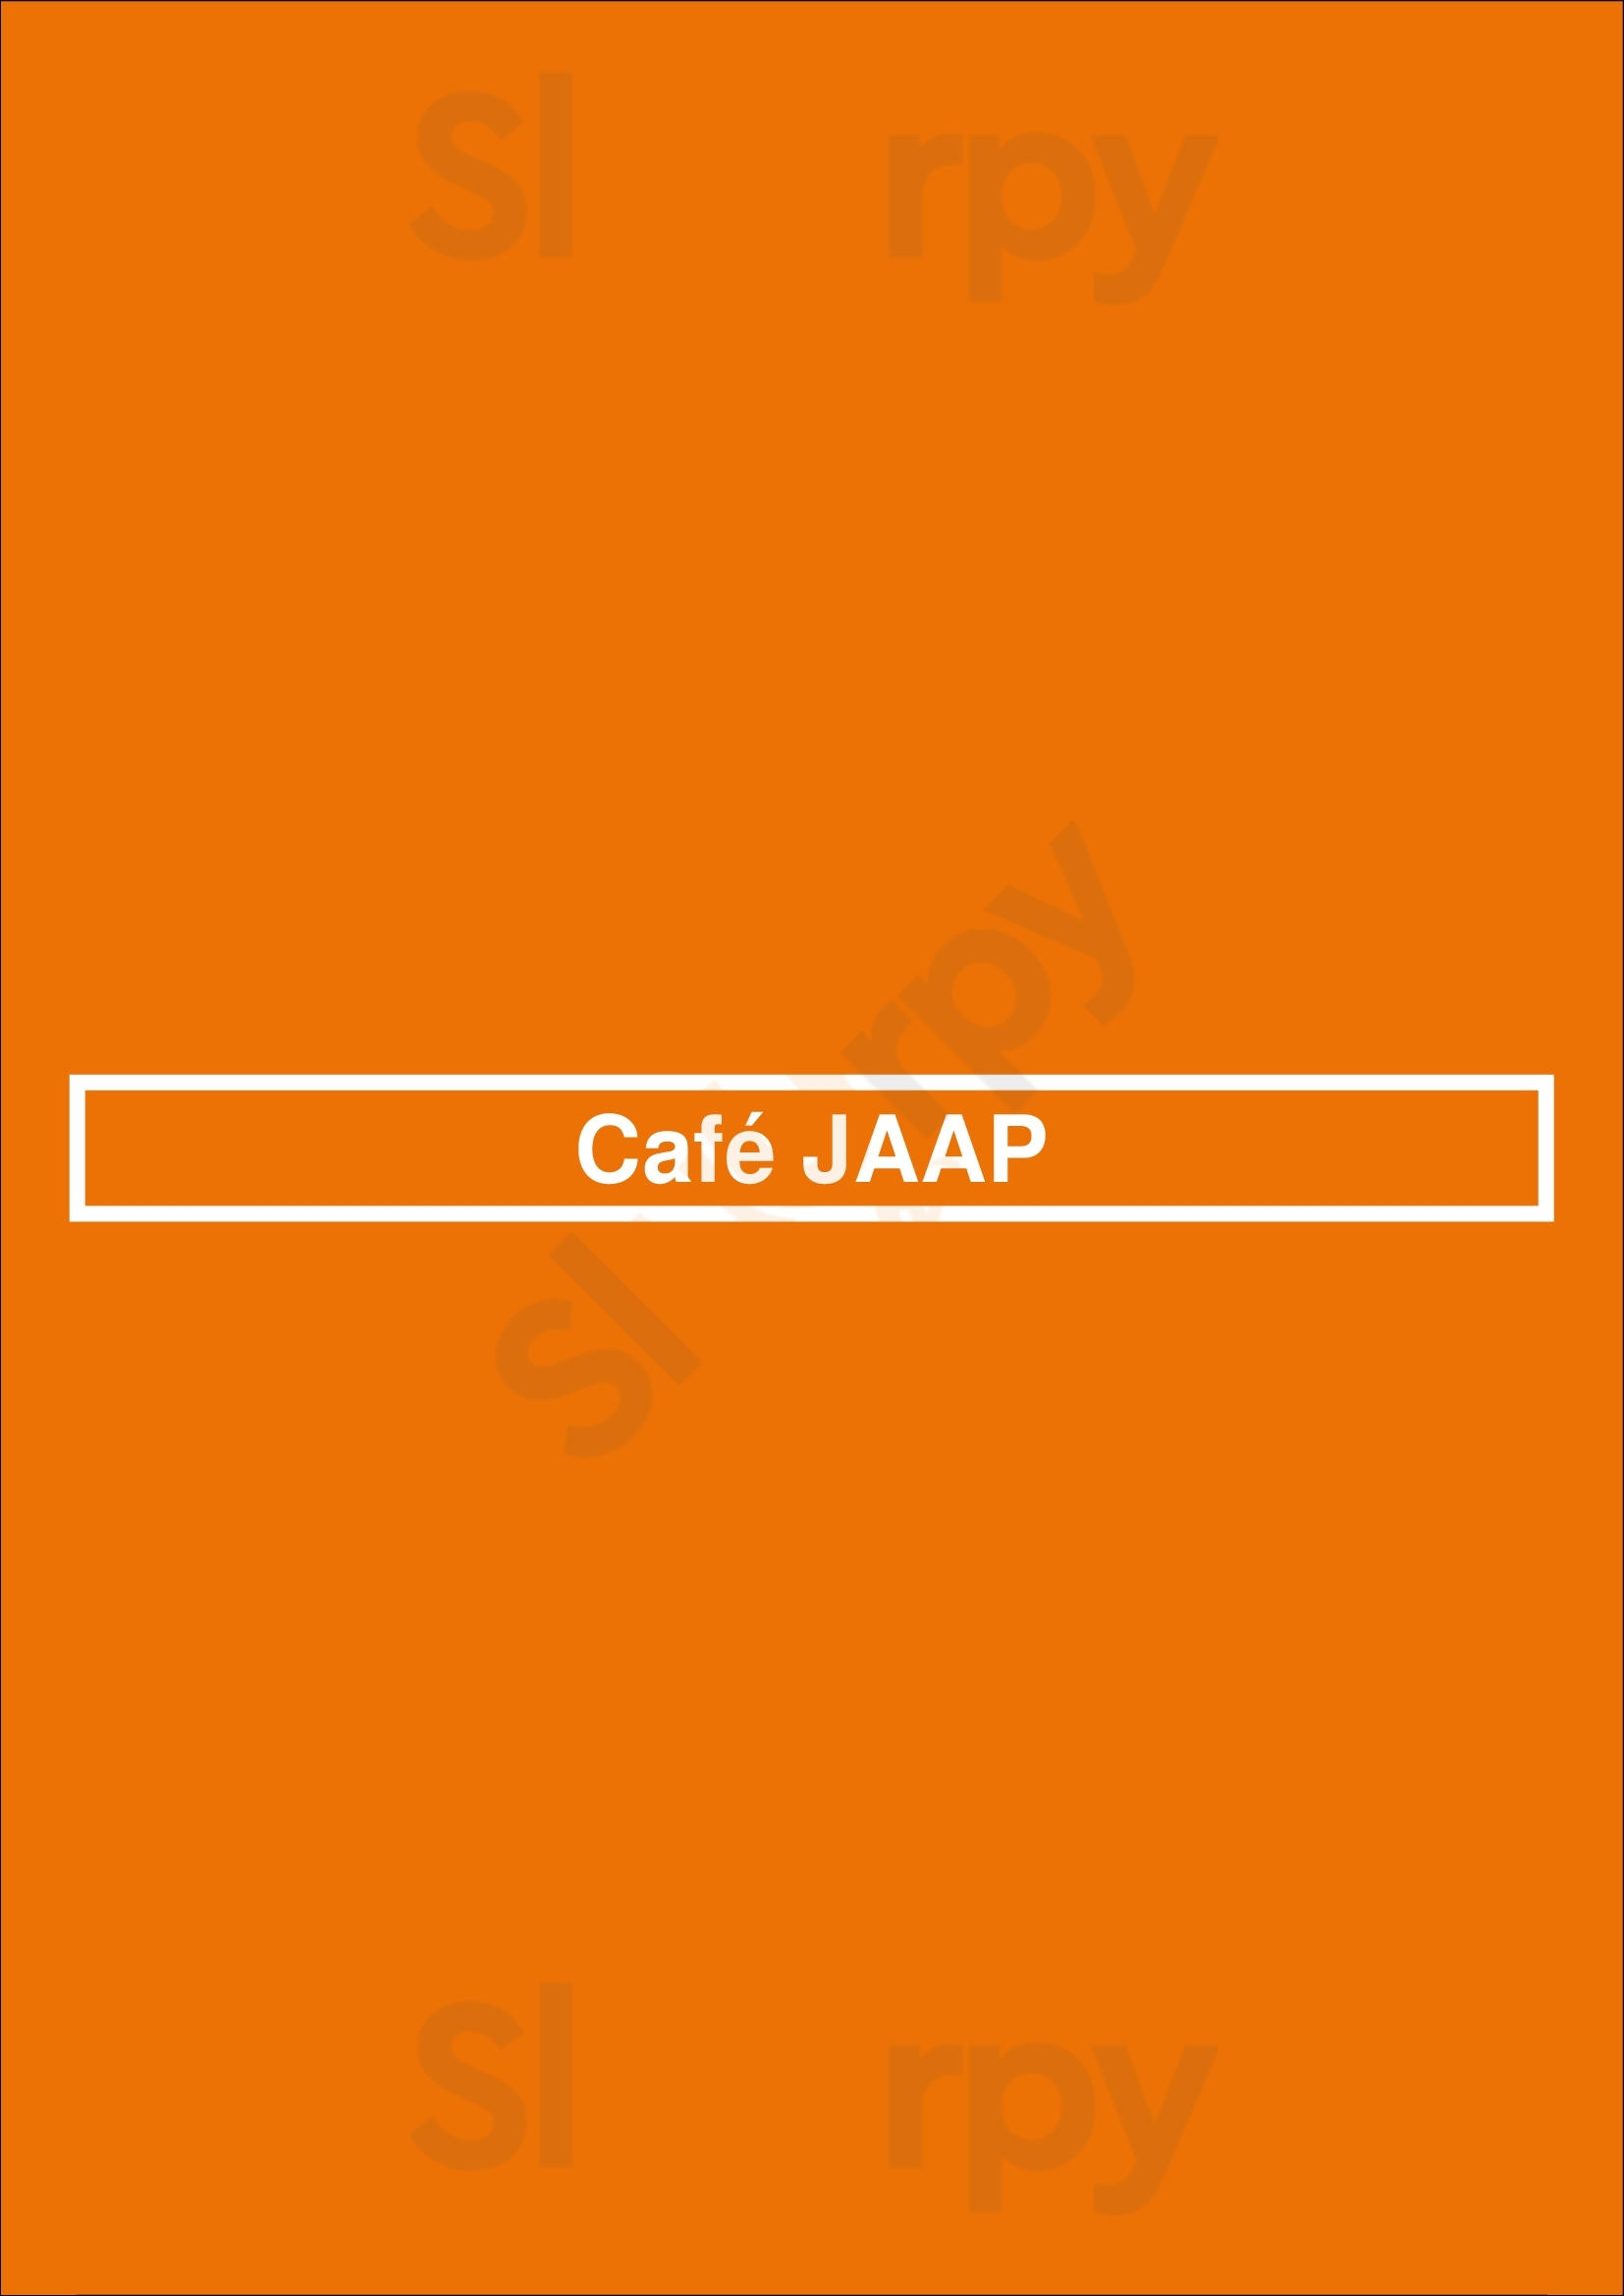 Café Jaap Amsterdam Menu - 1